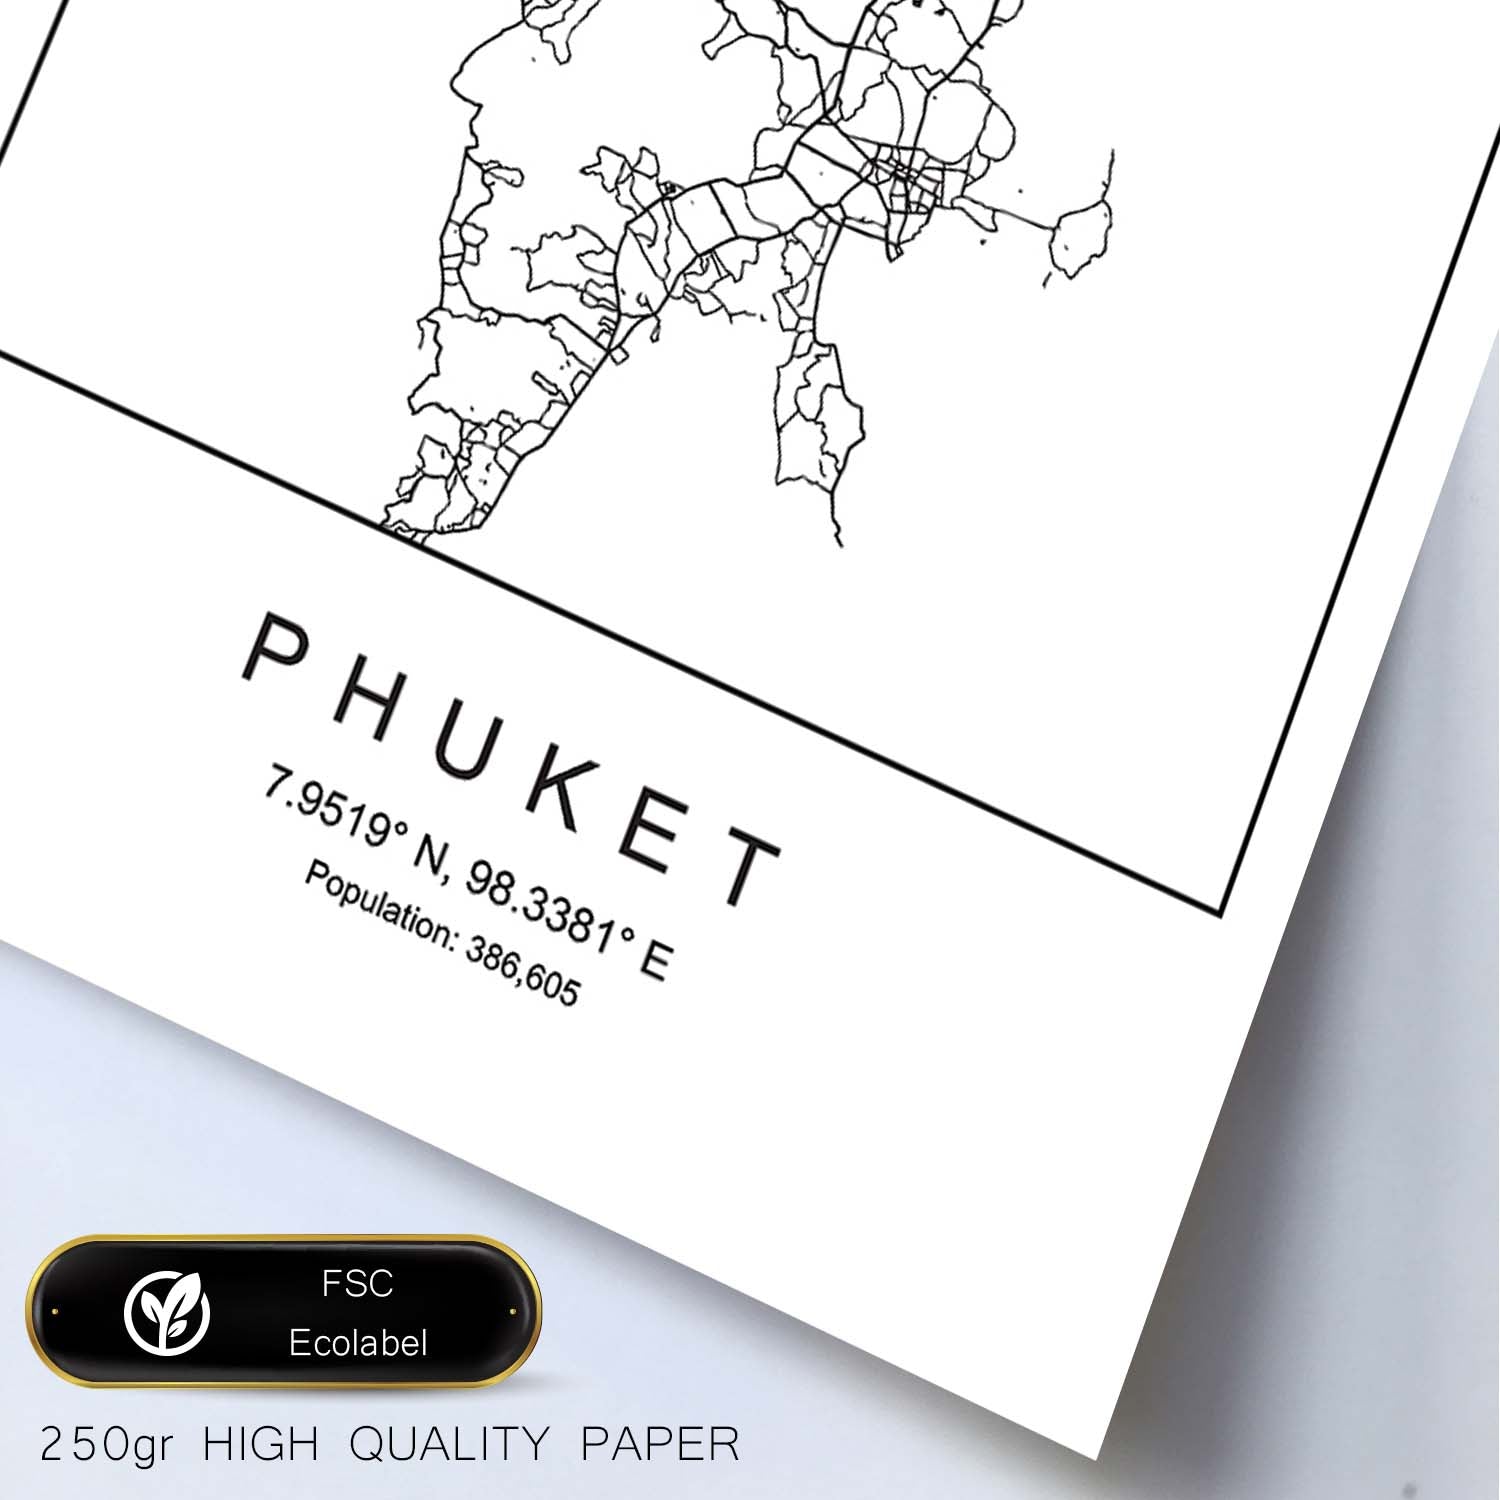 Lámina mapa de la ciudad Phuket estilo nordico en blanco y negro.-Artwork-Nacnic-Nacnic Estudio SL